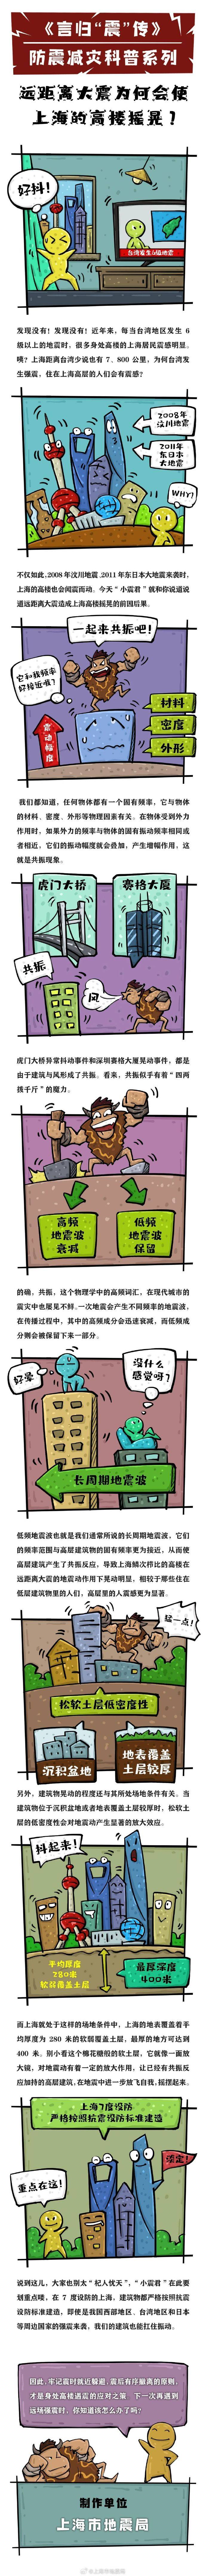 上海市地震局的微博，台湾地区发生中强地震，上海市民关注高层建筑安全，市地震局给出权威解答